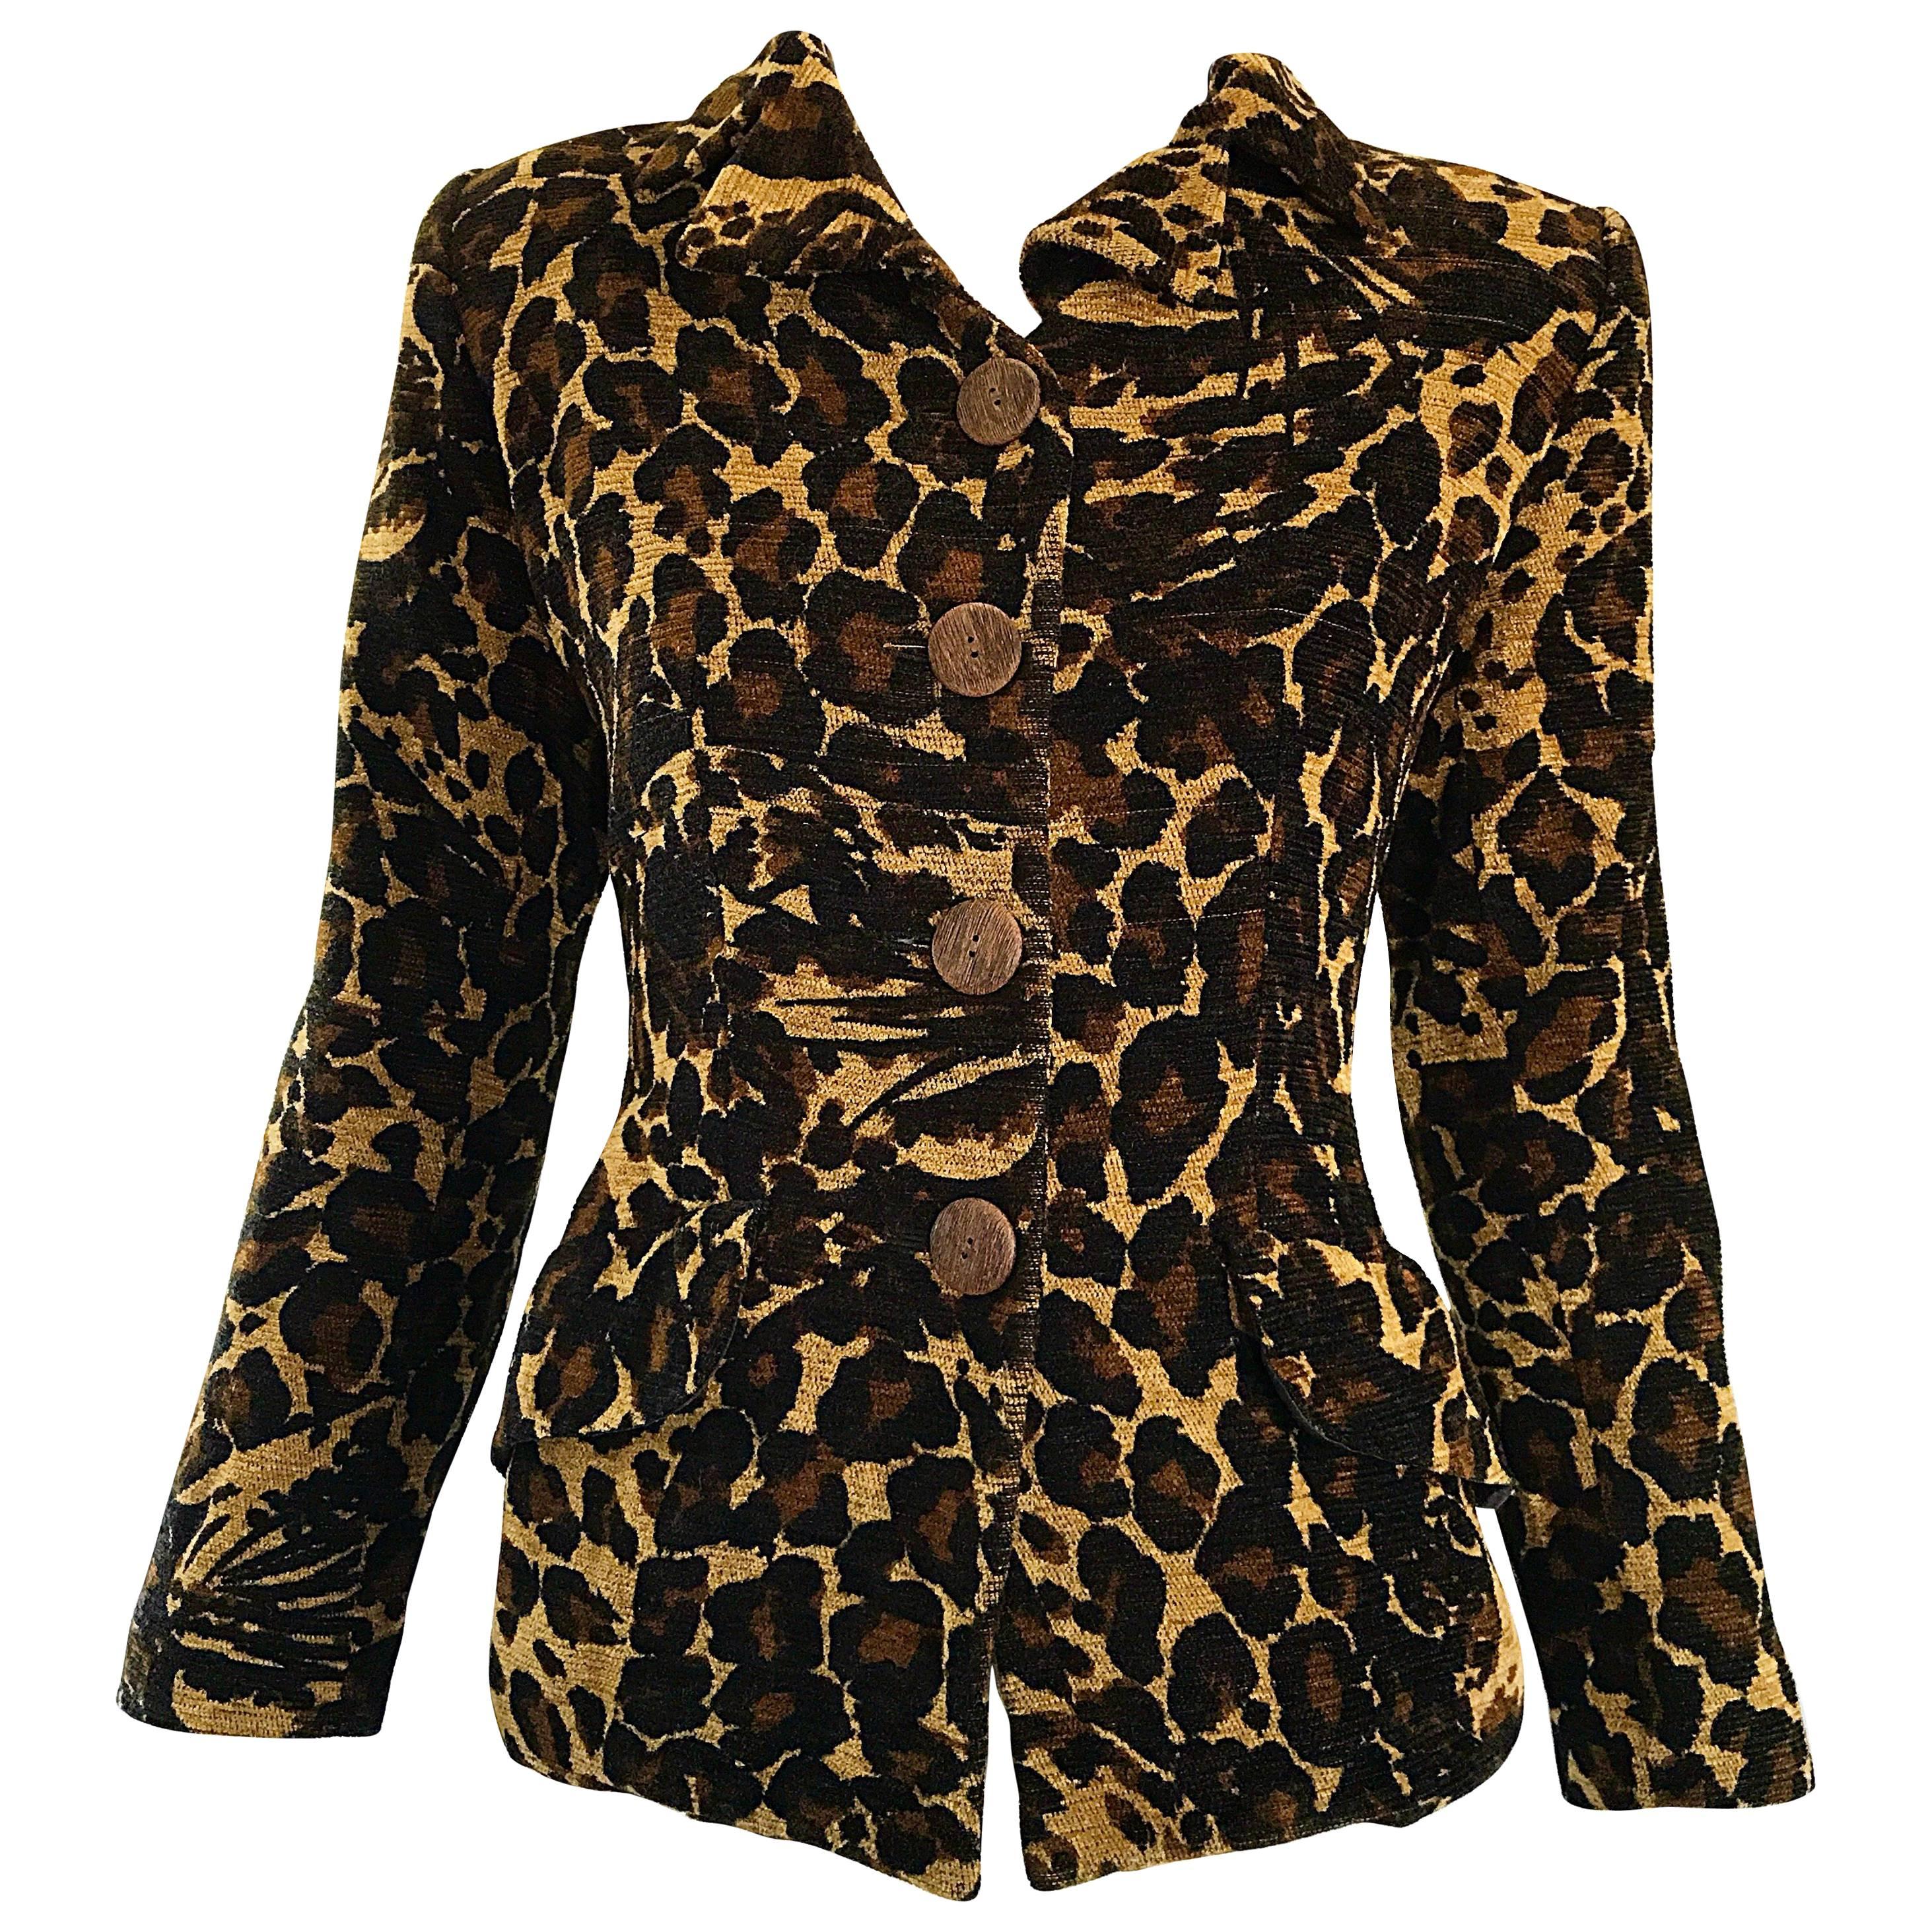 Iconic Yves Saint Laurent 1990s Leopard Print Chenille Vintage 90s Jacket Blazer For Sale